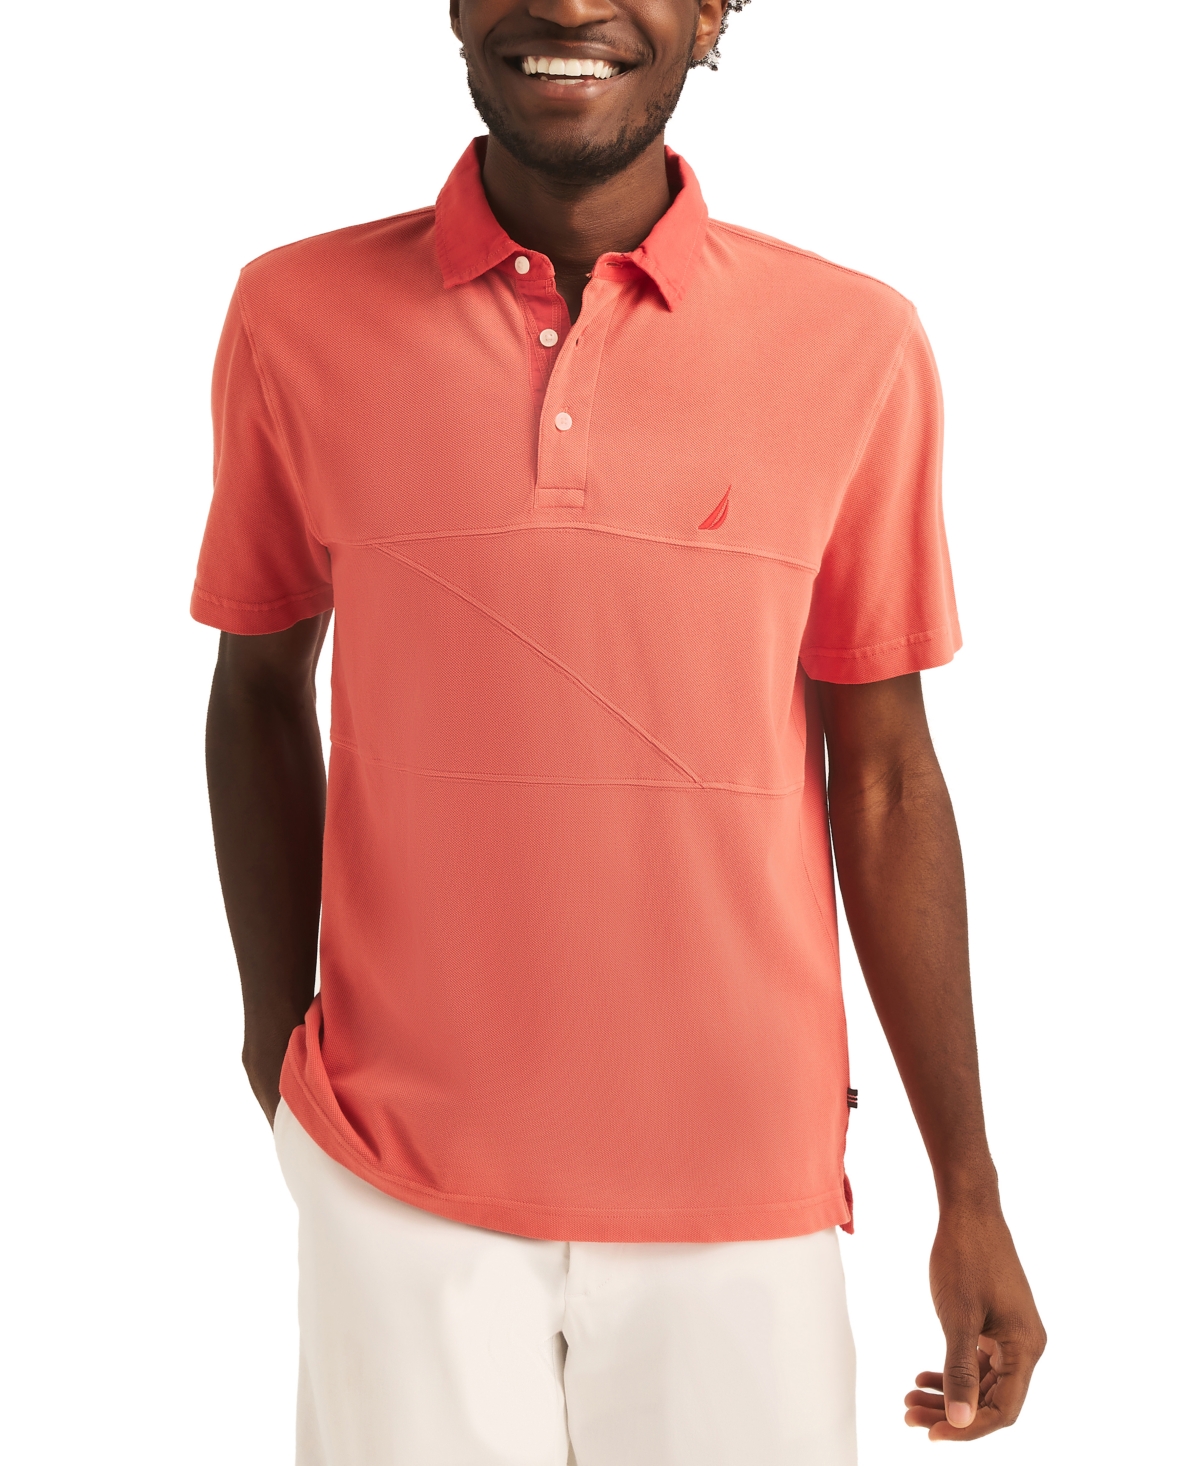 Men's Textured Pieced Pique Short Sleeve Polo Shirt - Pepper Red